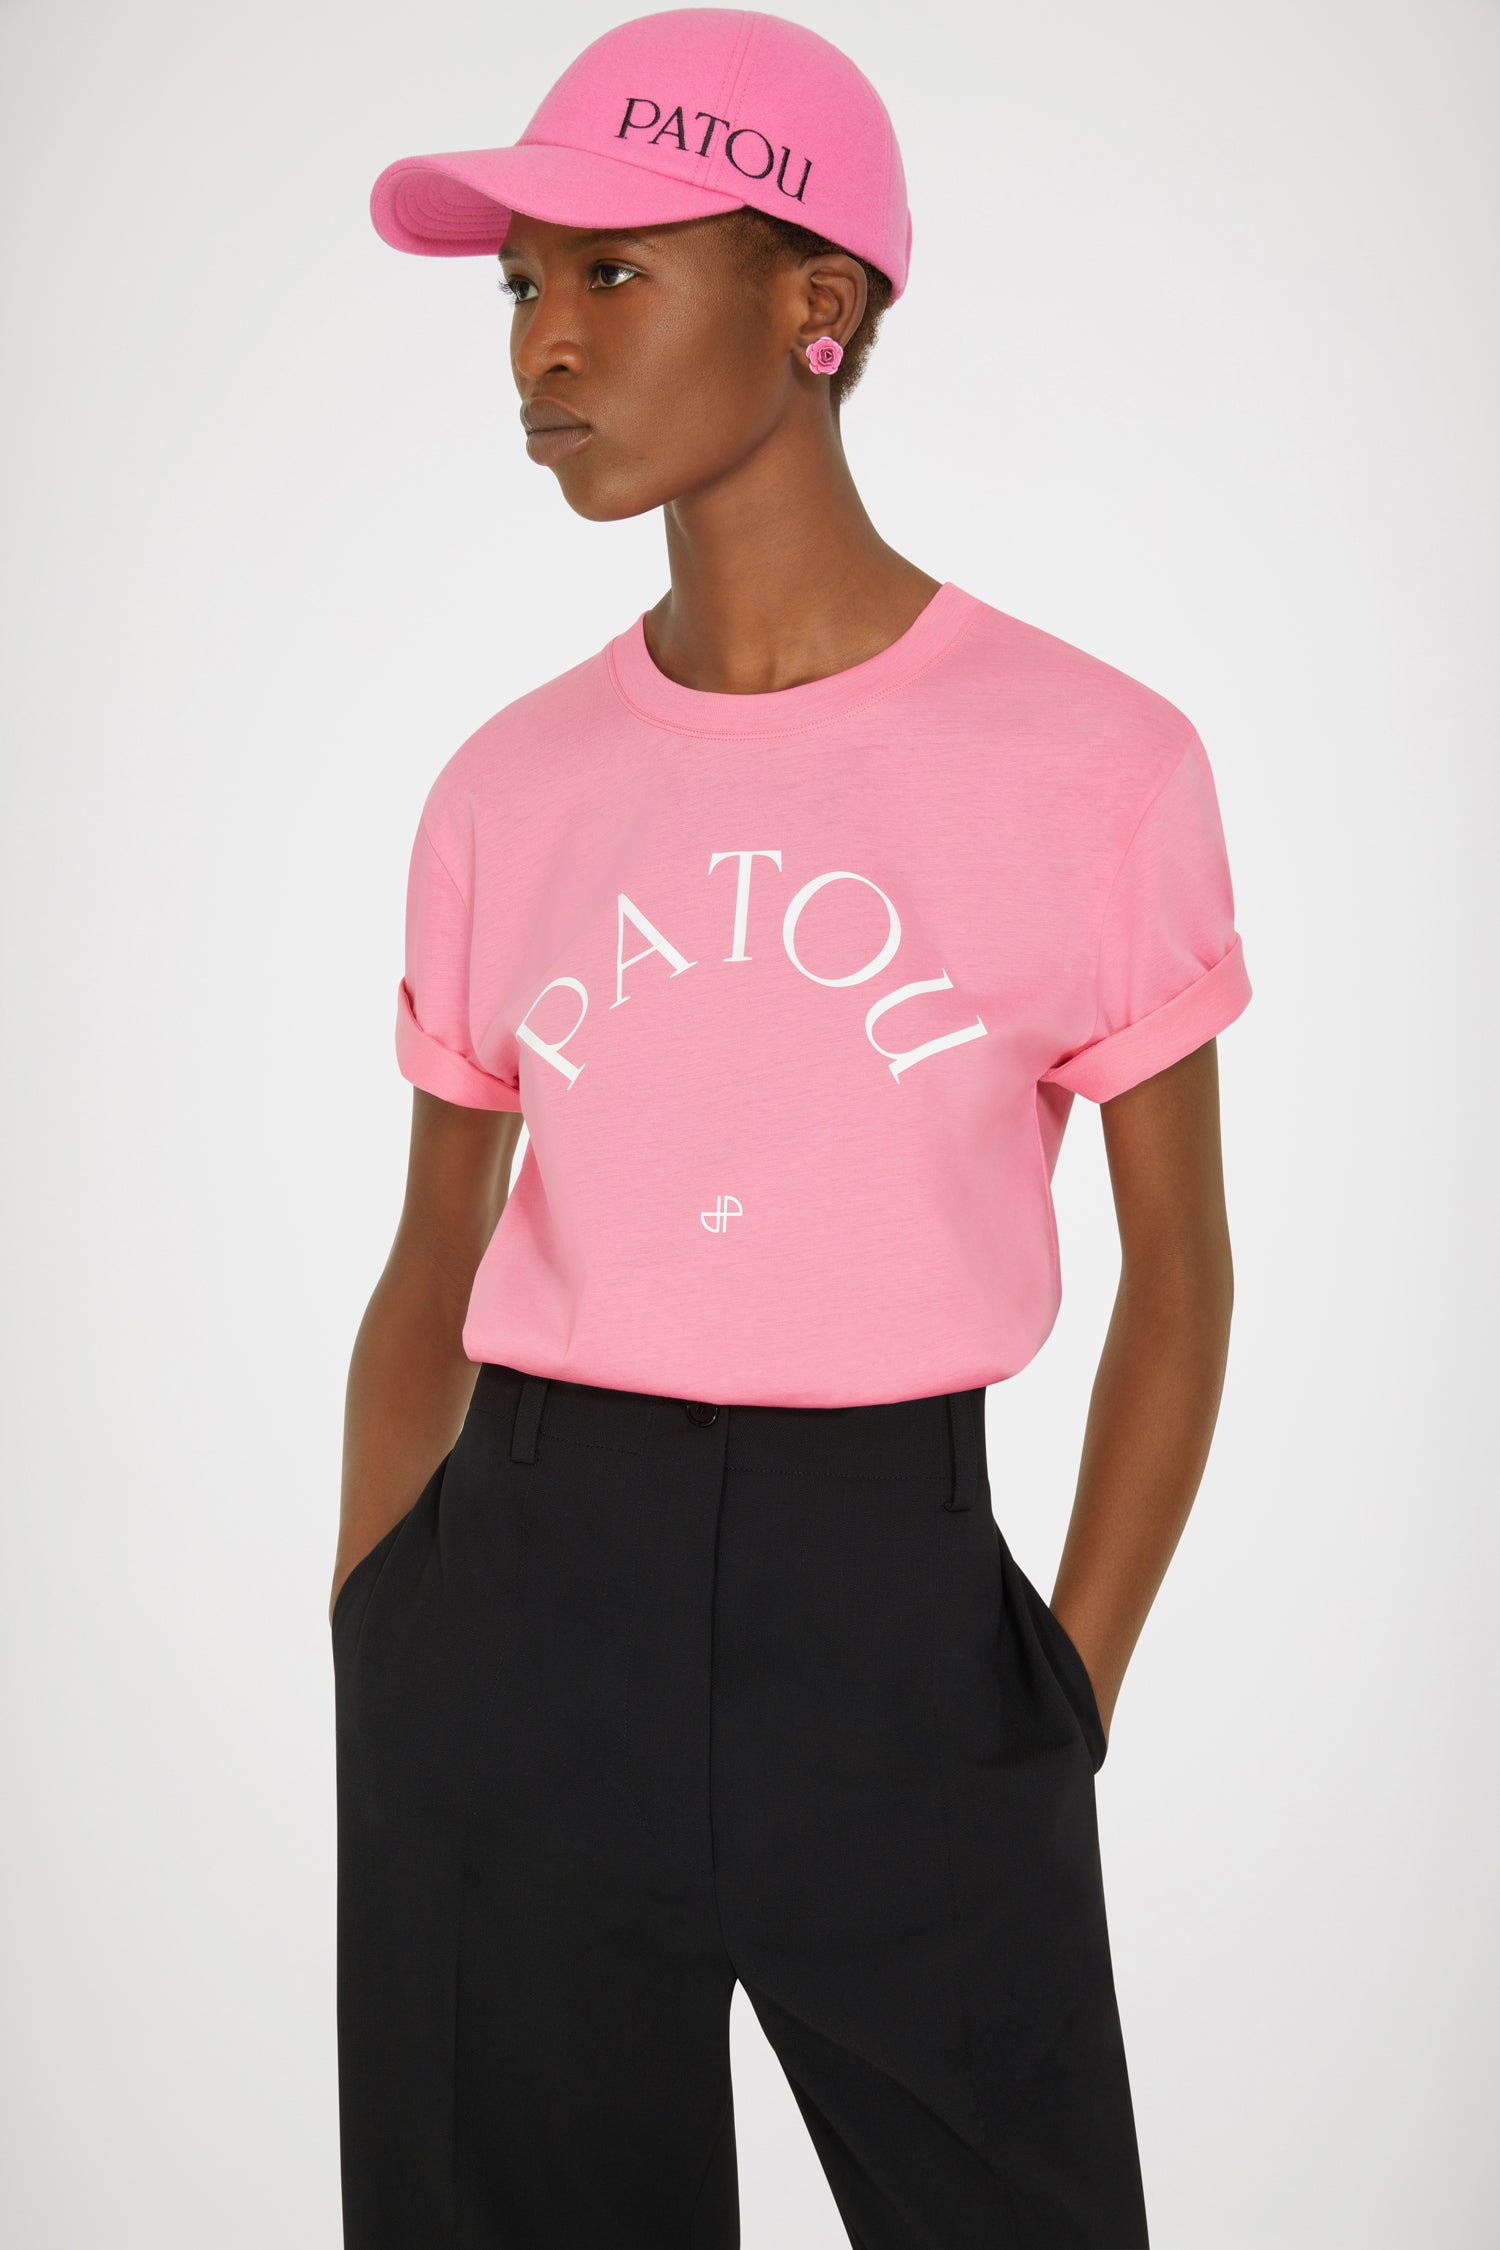 Patou t-shirt in organic cotton - Darling Pink - XS